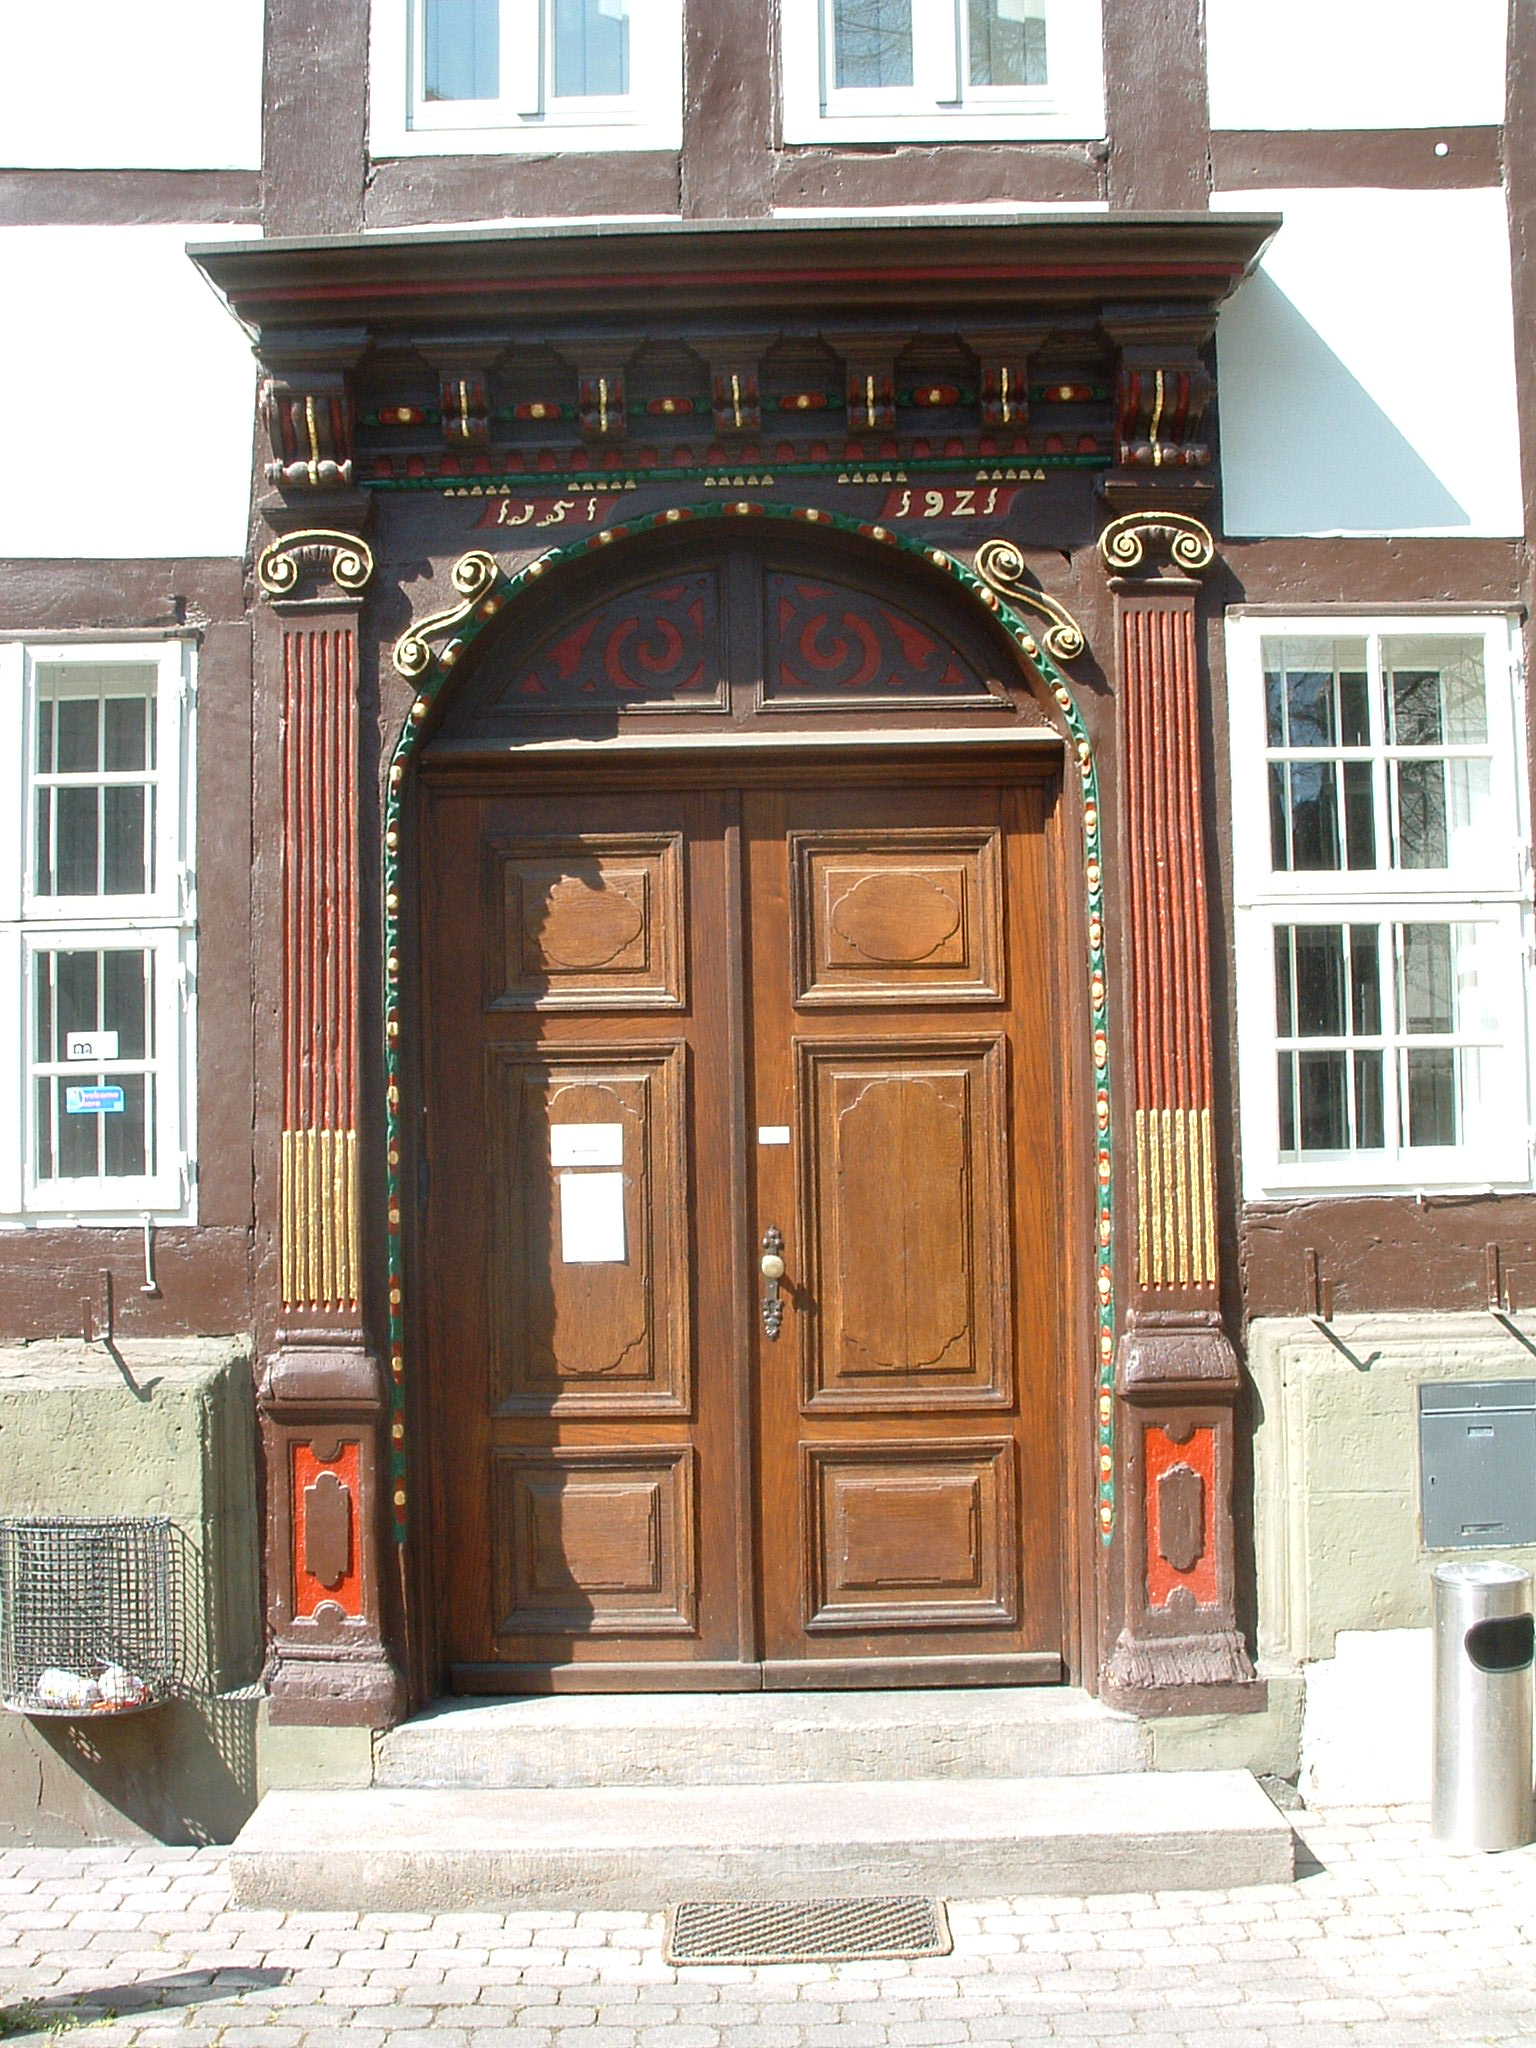 Städtisches Museum Göttingen am Ritterplan 7/8, Eingangstür